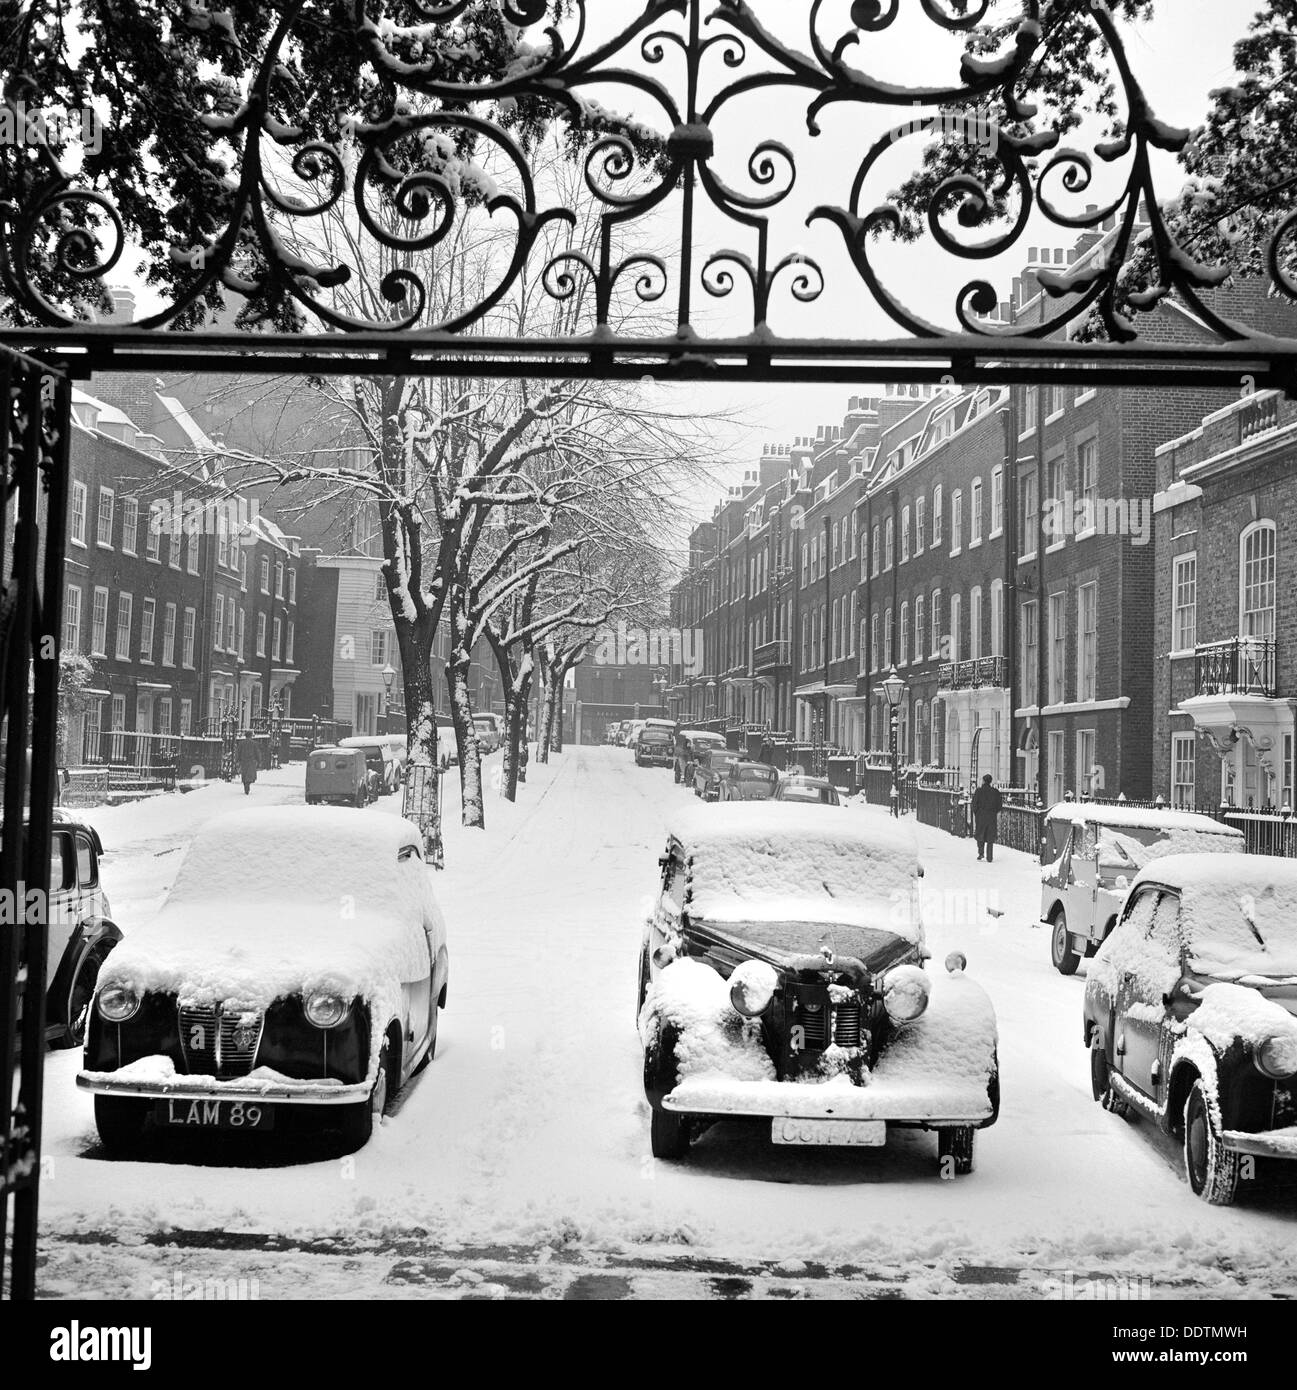 Snow-covered cars, Church Row, Hampstead, London, 1960-1965. Artist: John Gay Stock Photo